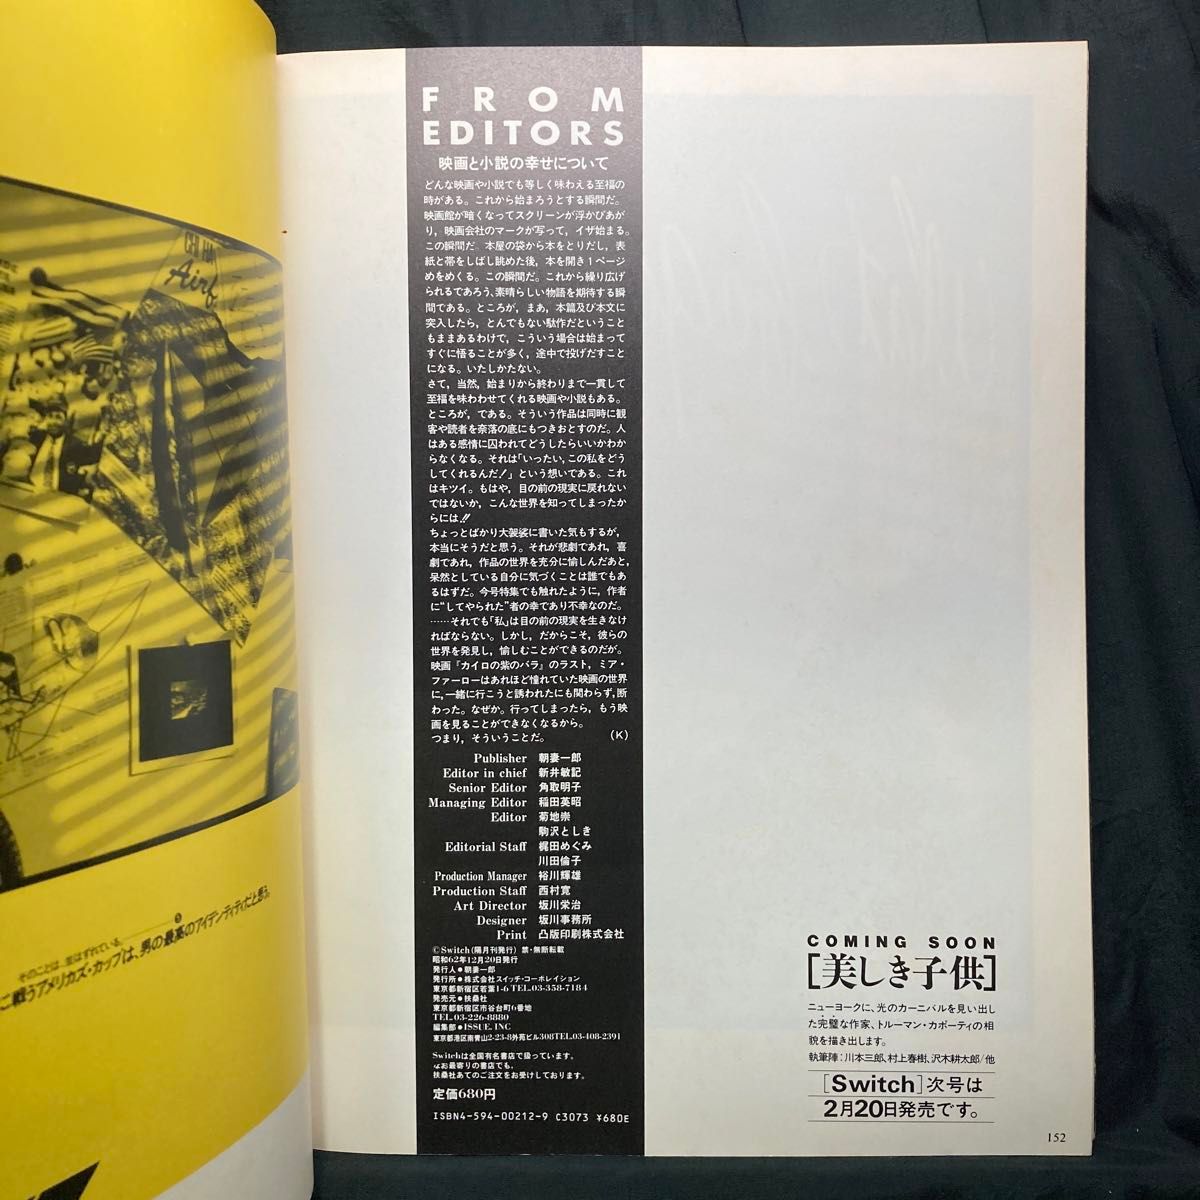 Switch 1987  Vol. 5 No.6 扶桑社 雑誌  特集：[笑う男]ロバート・デ・ニーロ 最新インタビュー